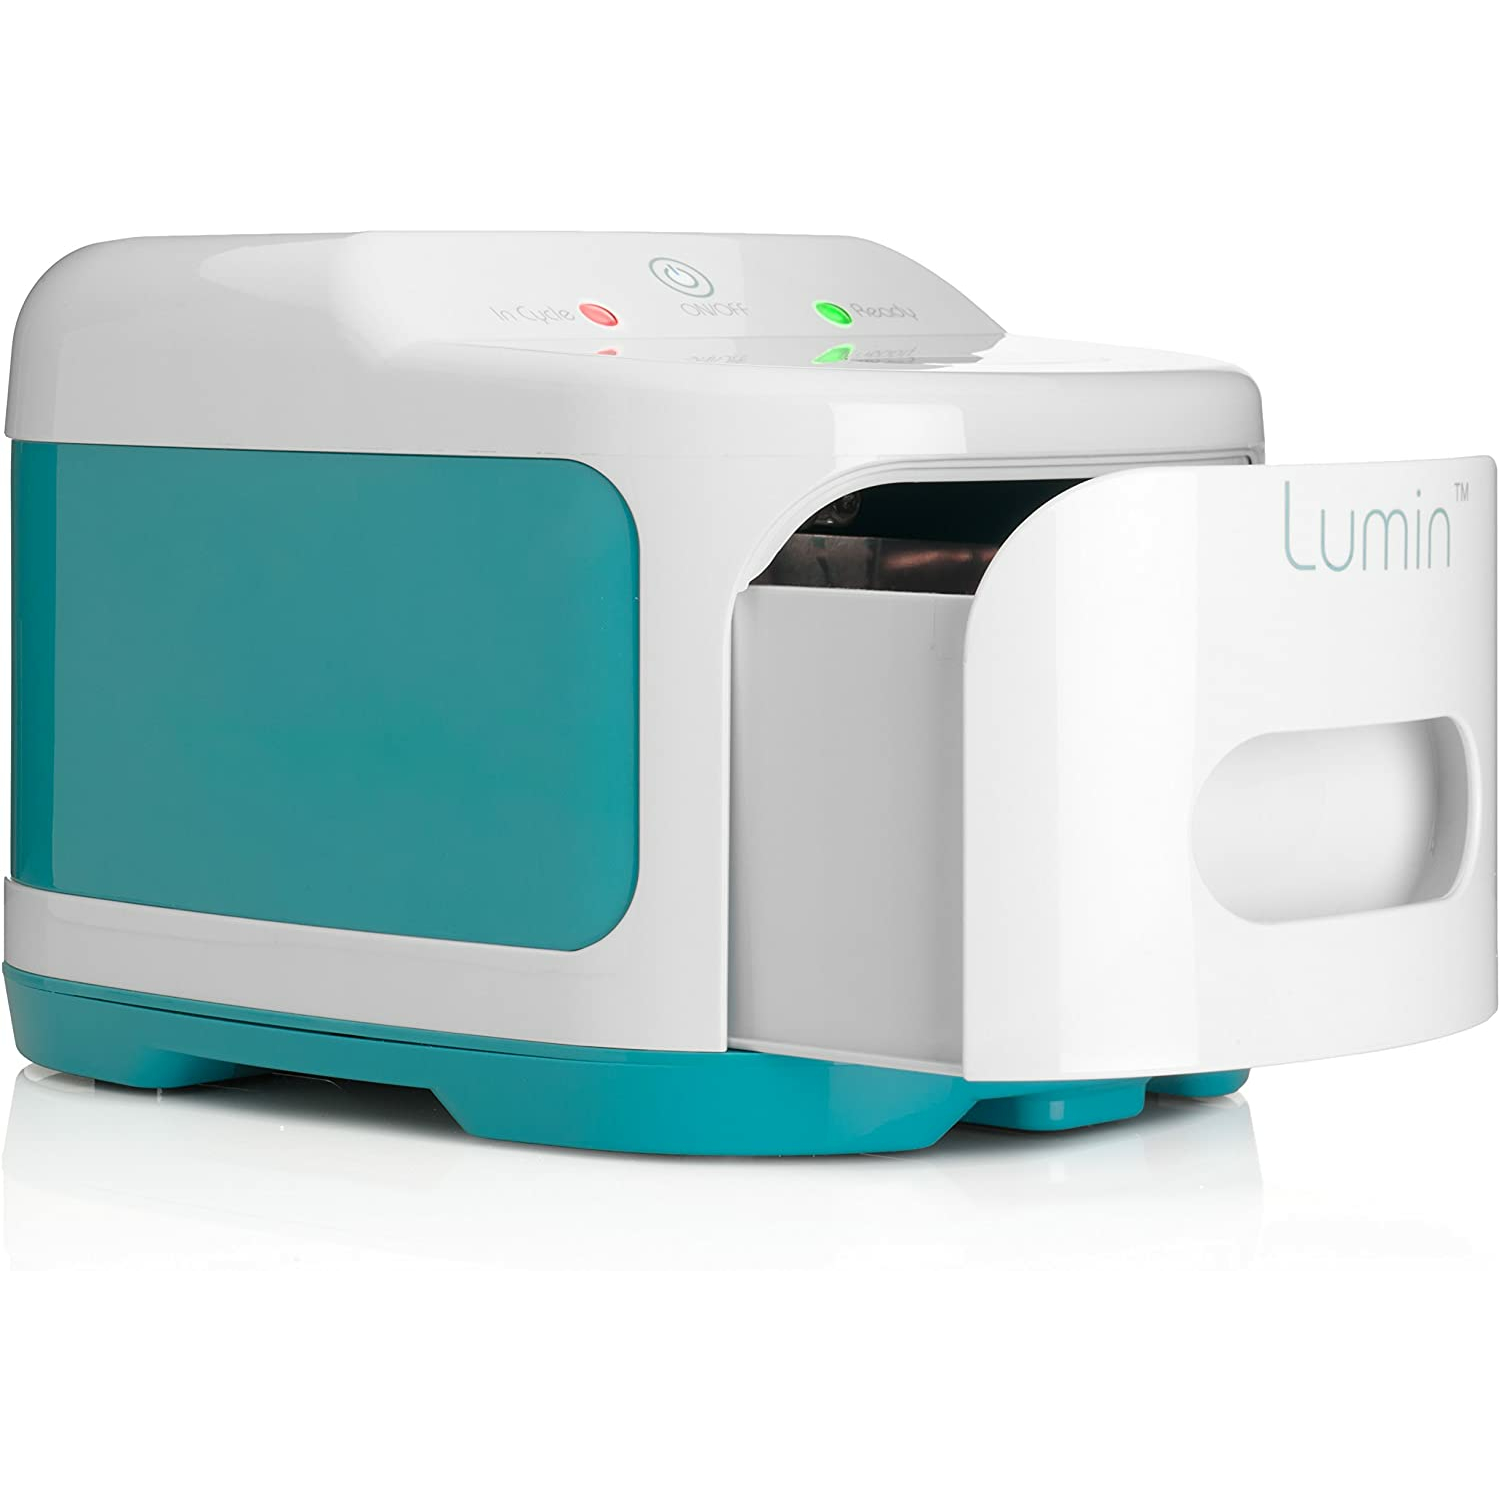 Lumin UV Light Sanitizer, Household Sterilizer for CPAP Users, Baby Bottles, Toys, Toothbrush